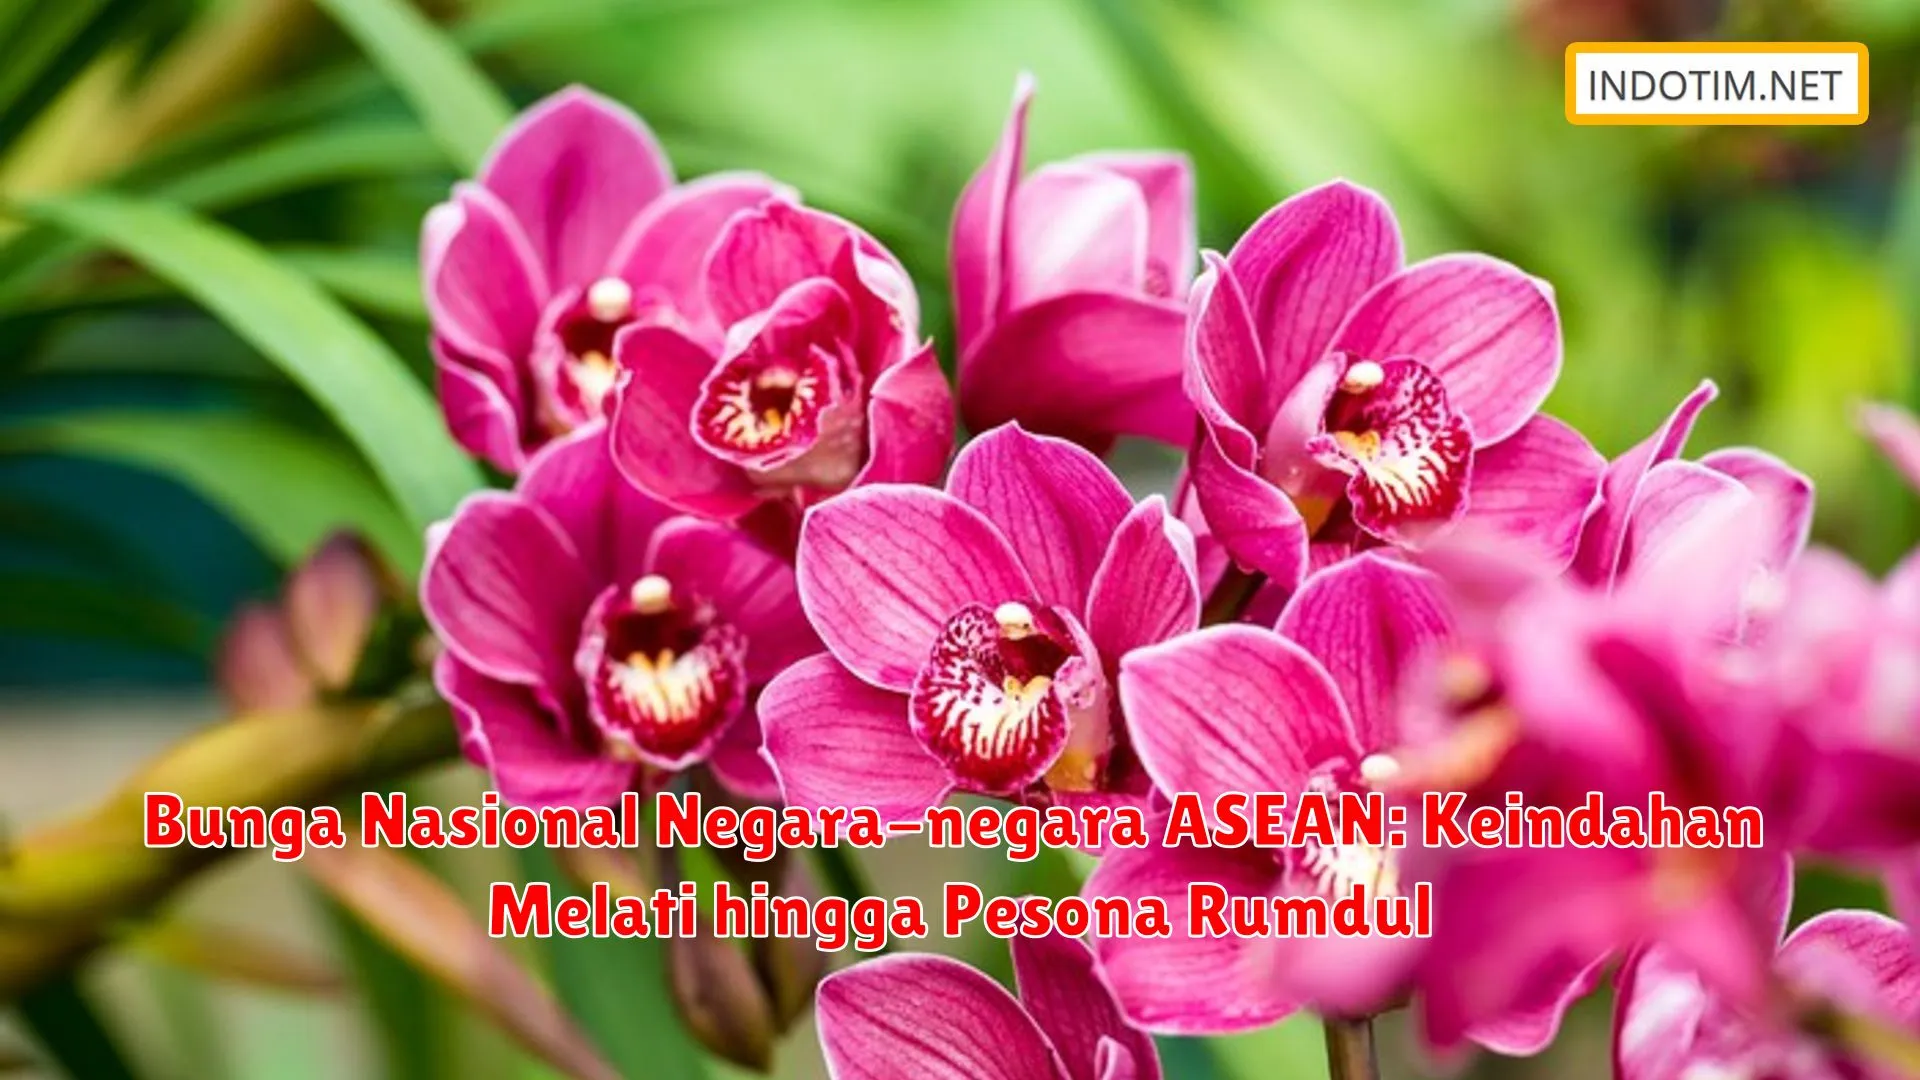 Bunga Nasional Negara-negara ASEAN: Keindahan Melati hingga Pesona Rumdul